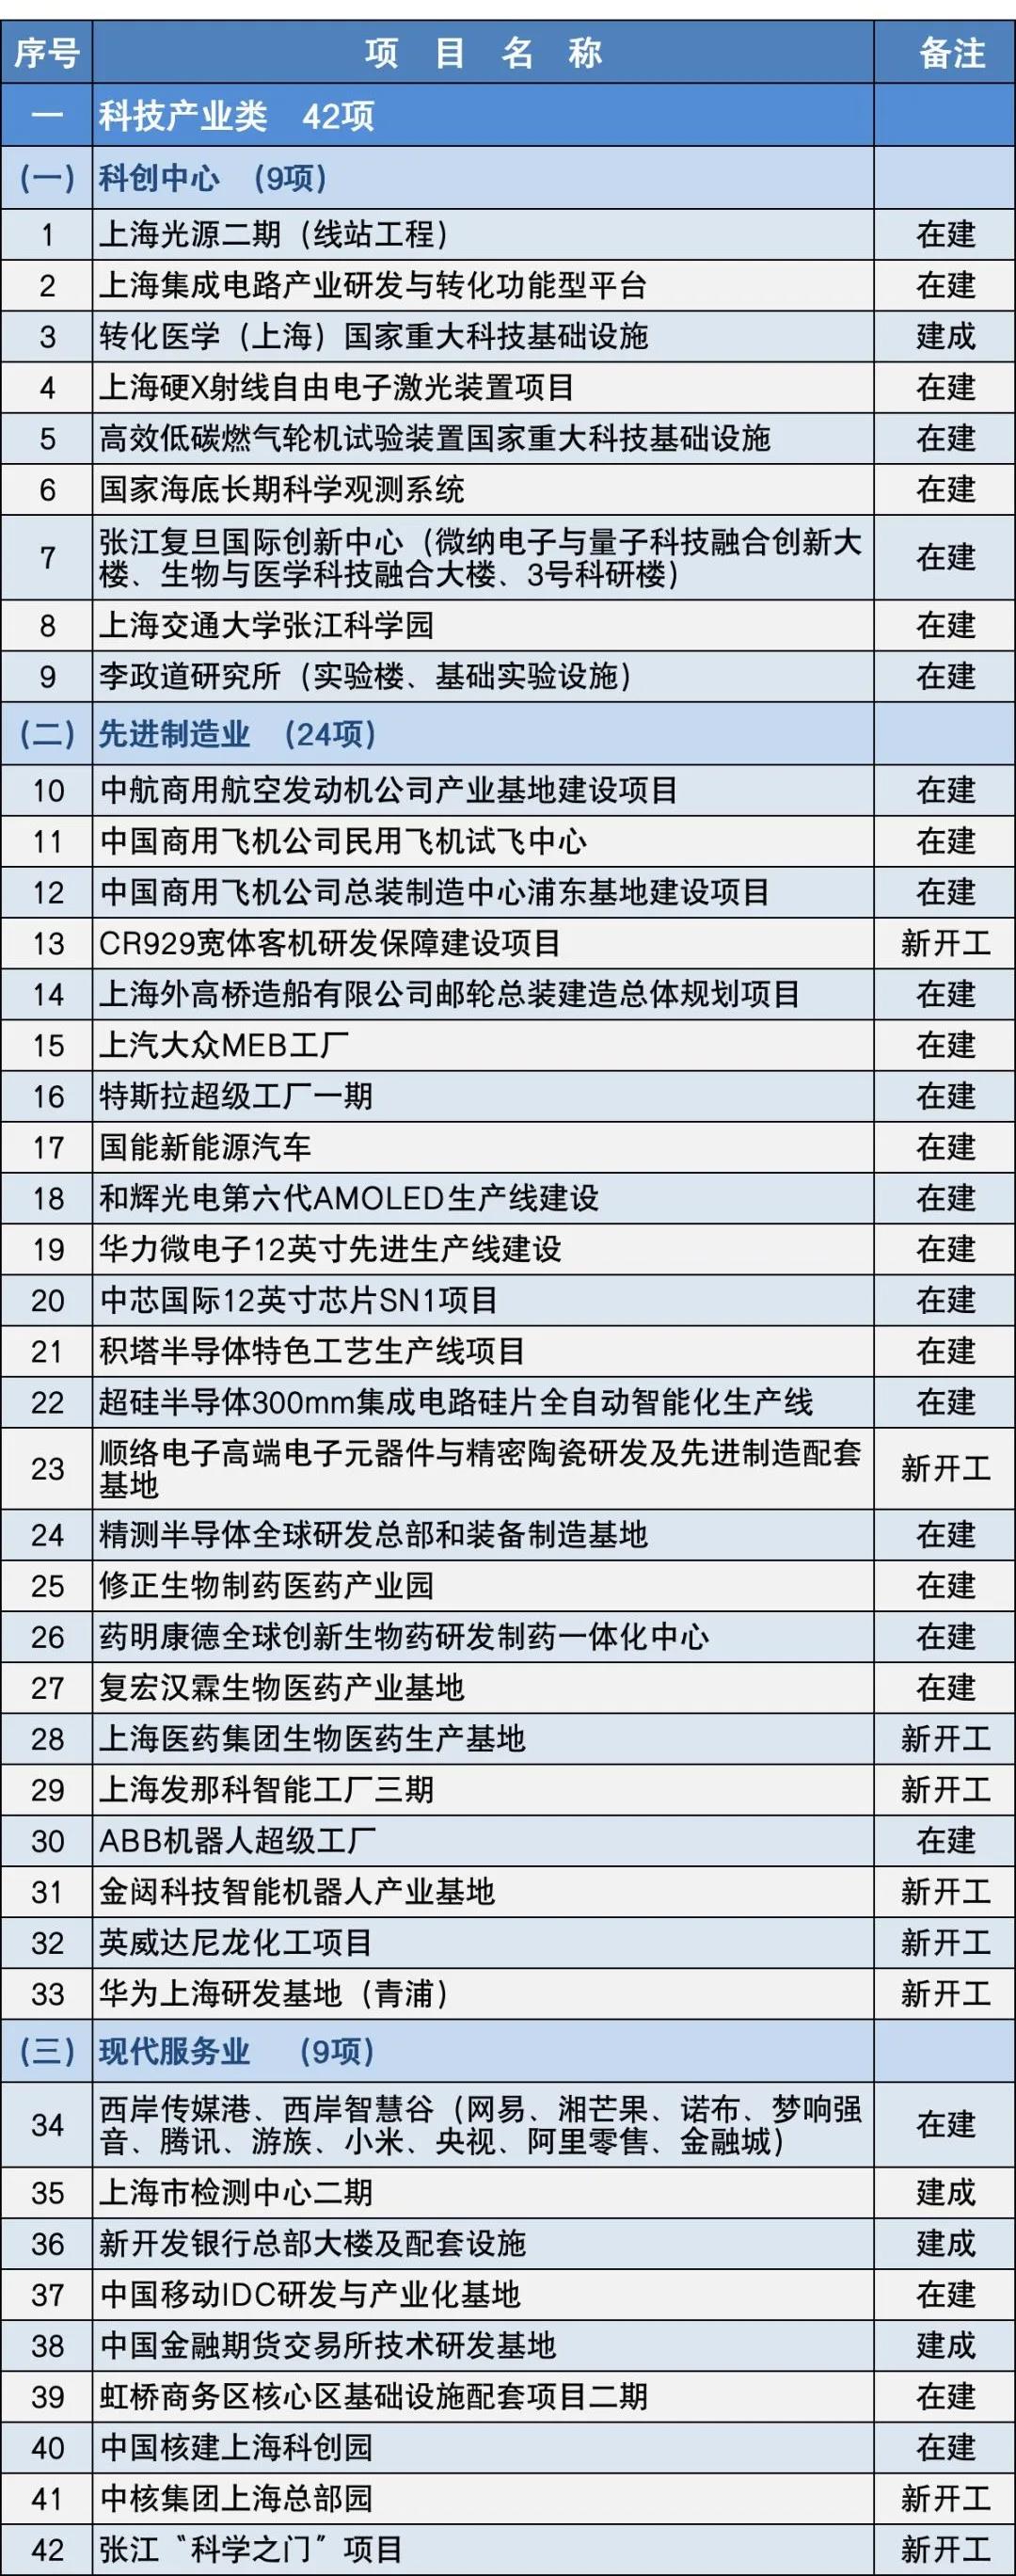 上海今年将安排152项重大建设项目 华为上海研发基地等计划开工